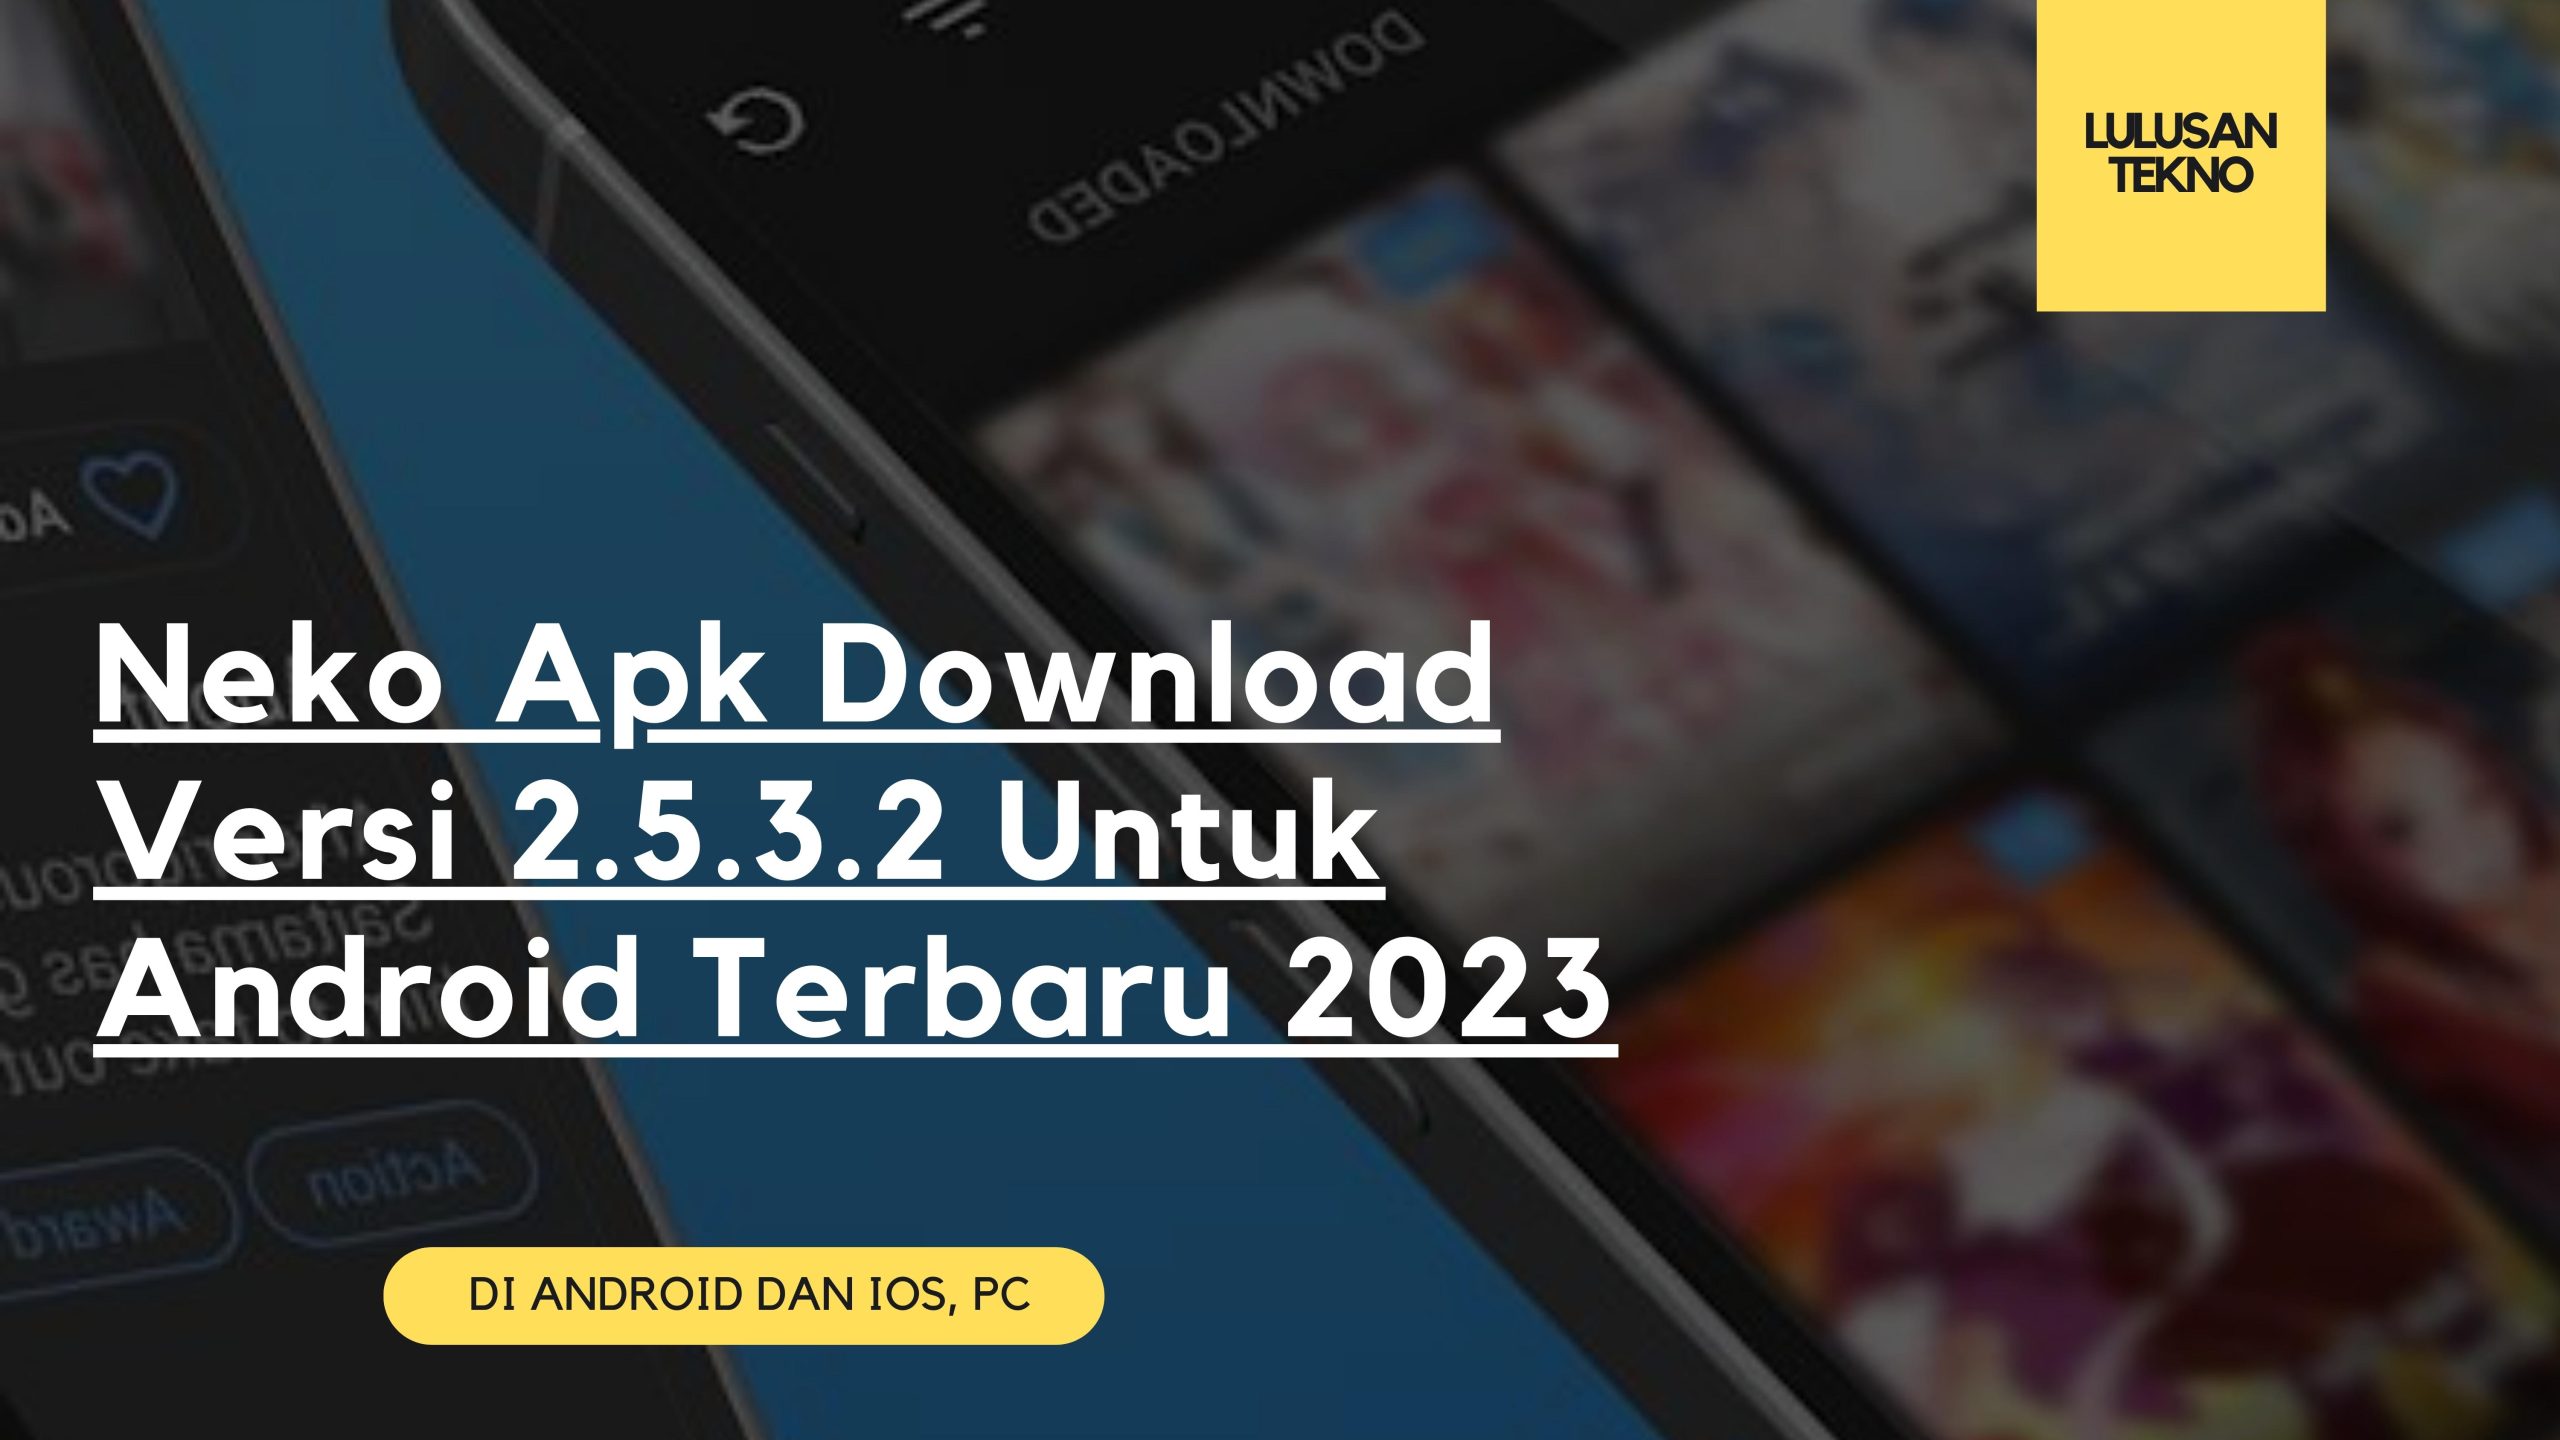 Neko Apk Download Versi 2.5.3.2 Untuk Android Terbaru 2023